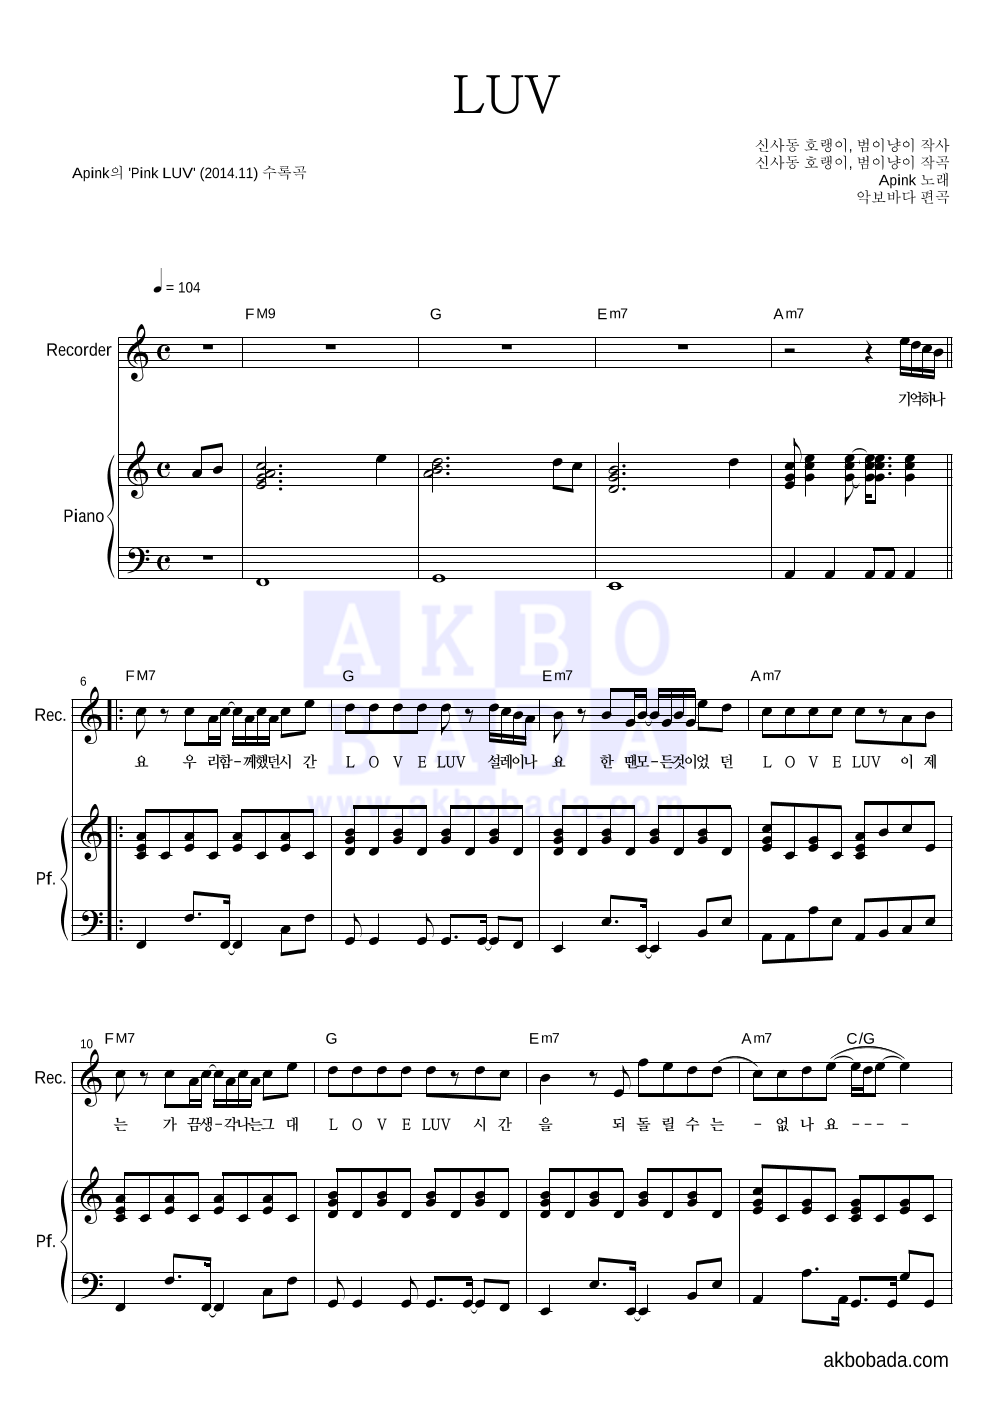 에이핑크 - LUV 리코더&피아노 악보 